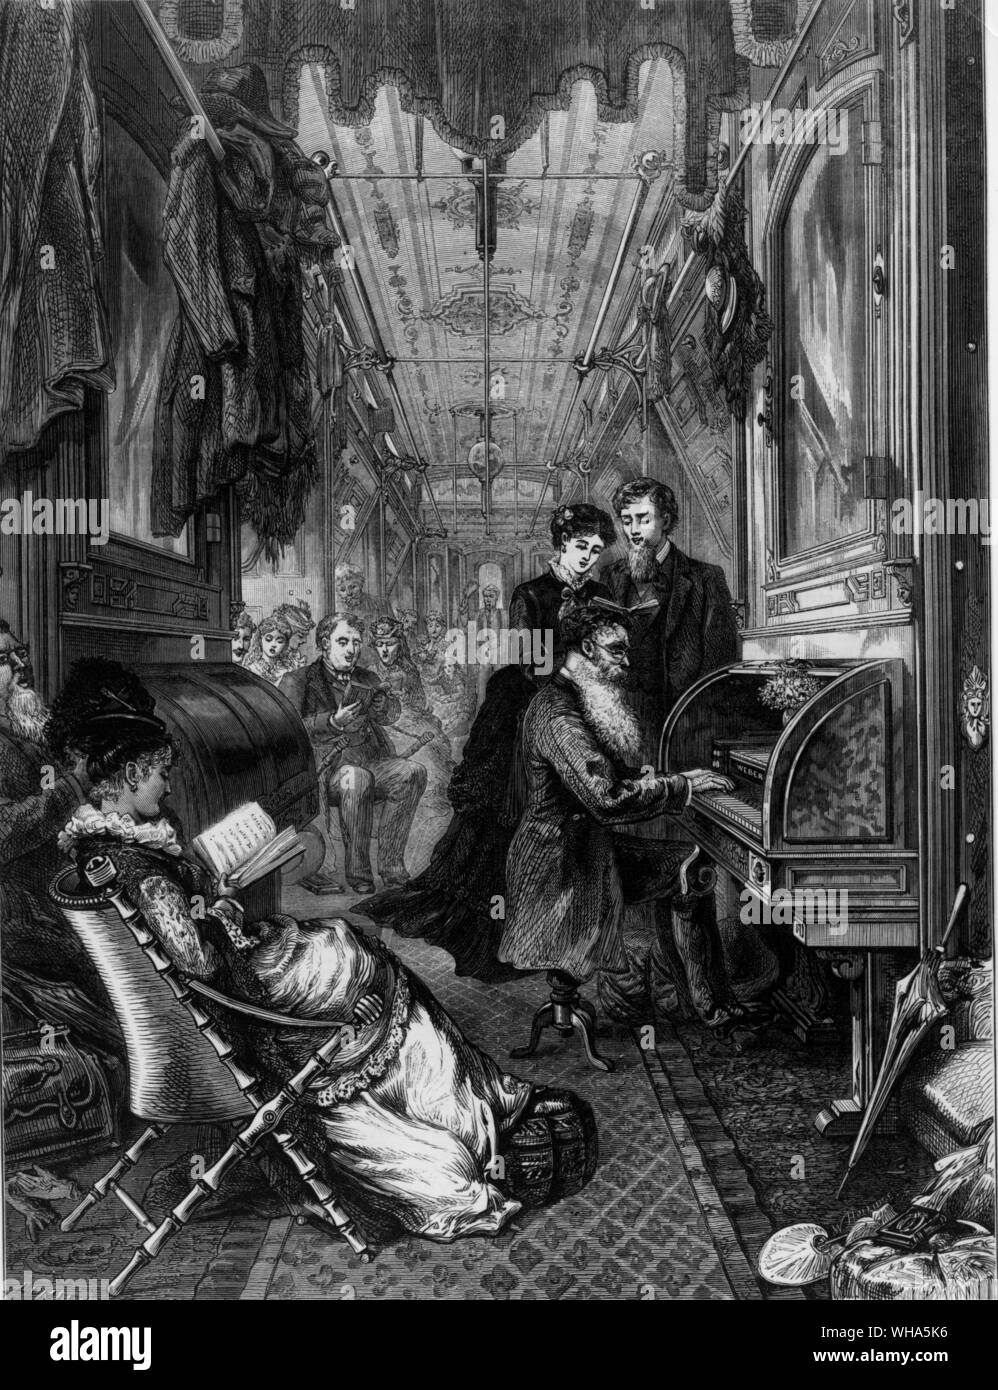 Dimanche sur l'Union Pacific Railway. 1875 Banque D'Images